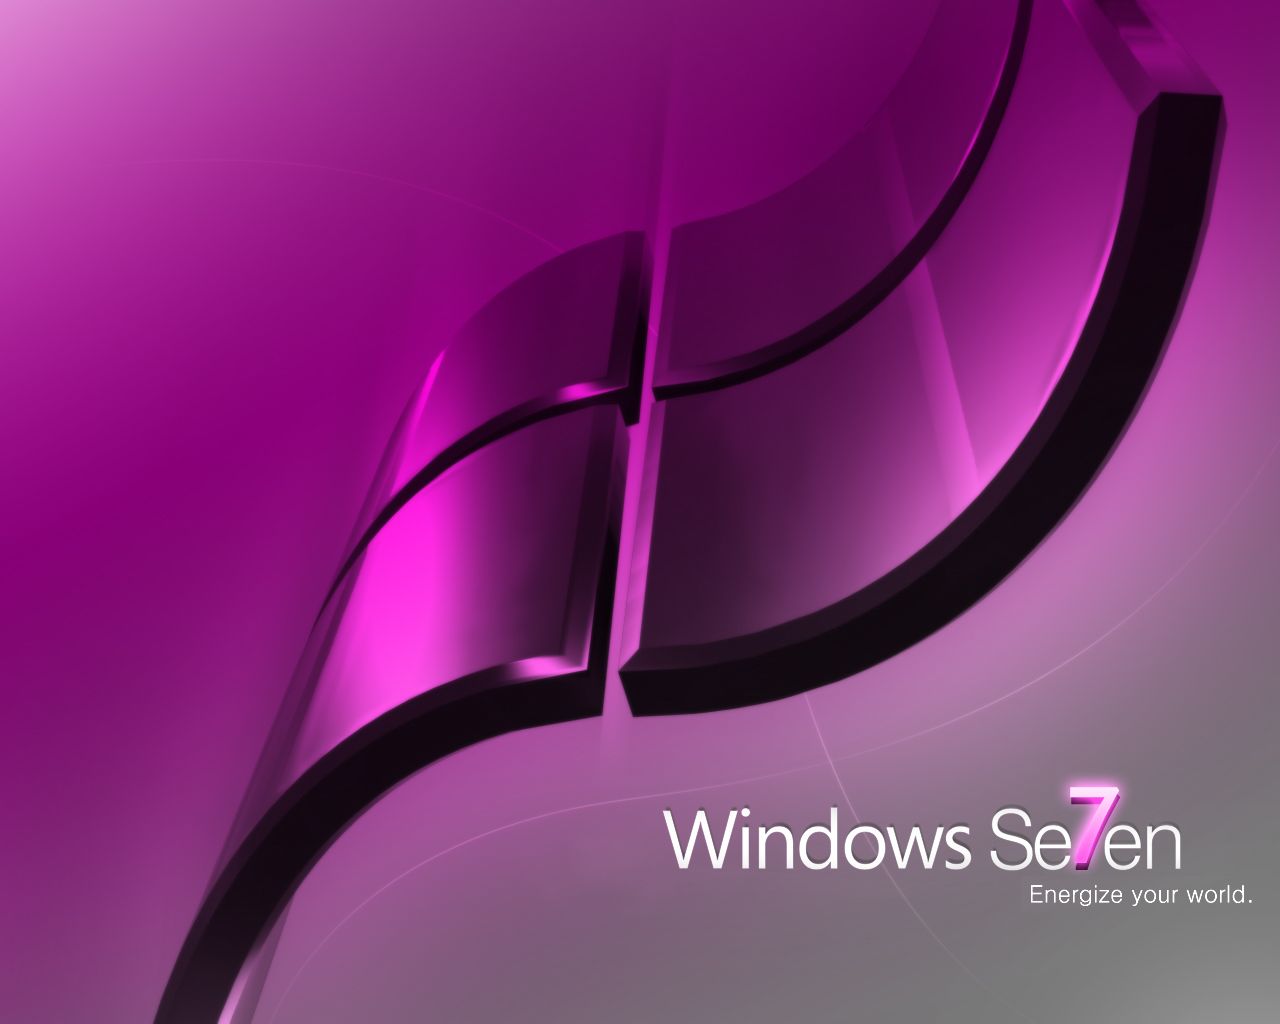 slike za desktop windows 10